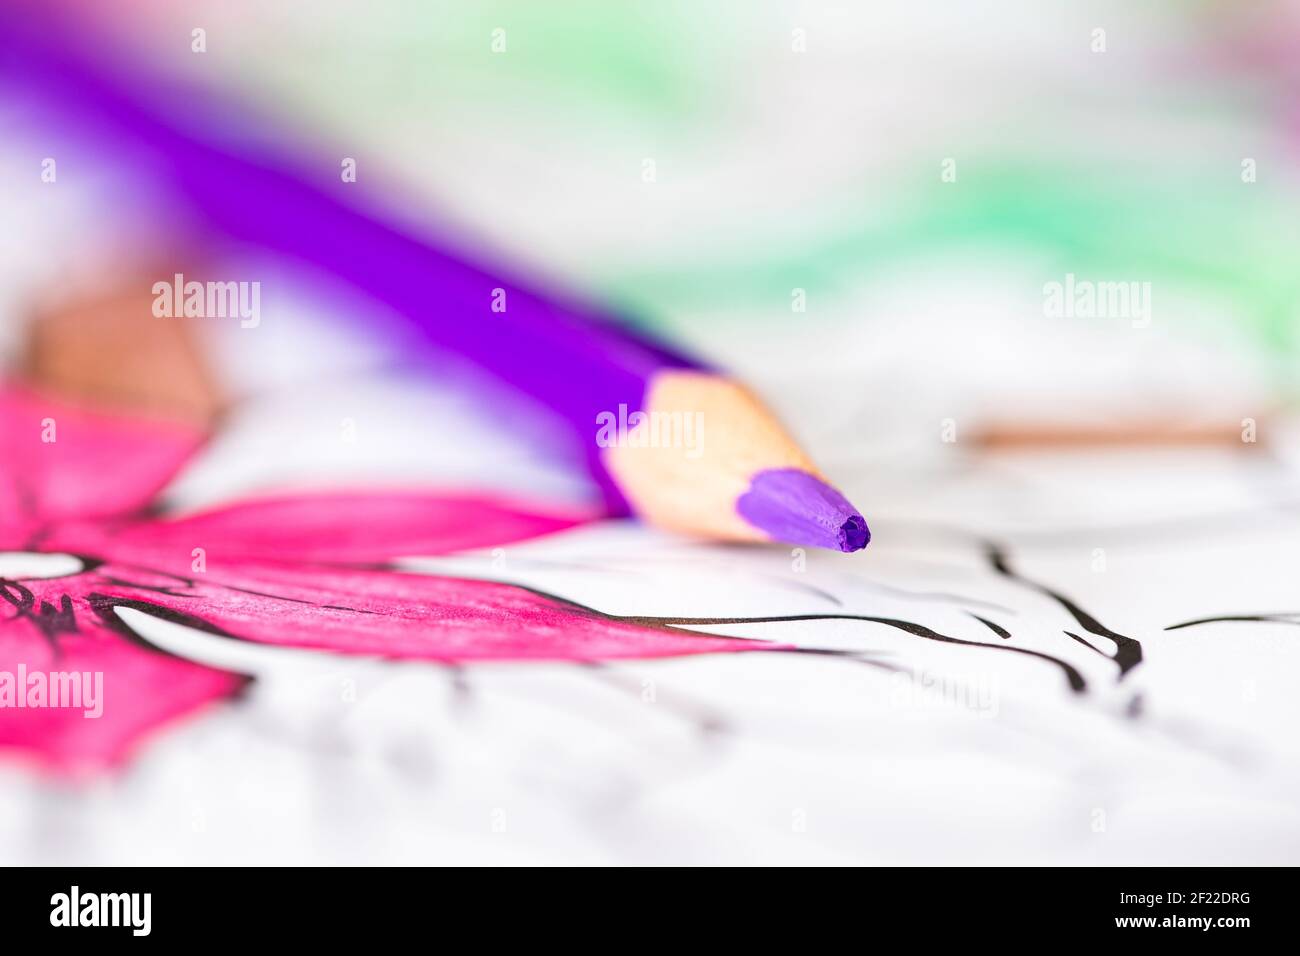 Ein Nahaufnahme Makro-Porträt eines lila Bleistift auf einem Malbuch für Erwachsene liegen. Die Seite ist bereits etwas eingefärbt, aber einige Teile sind noch weiß Stockfoto